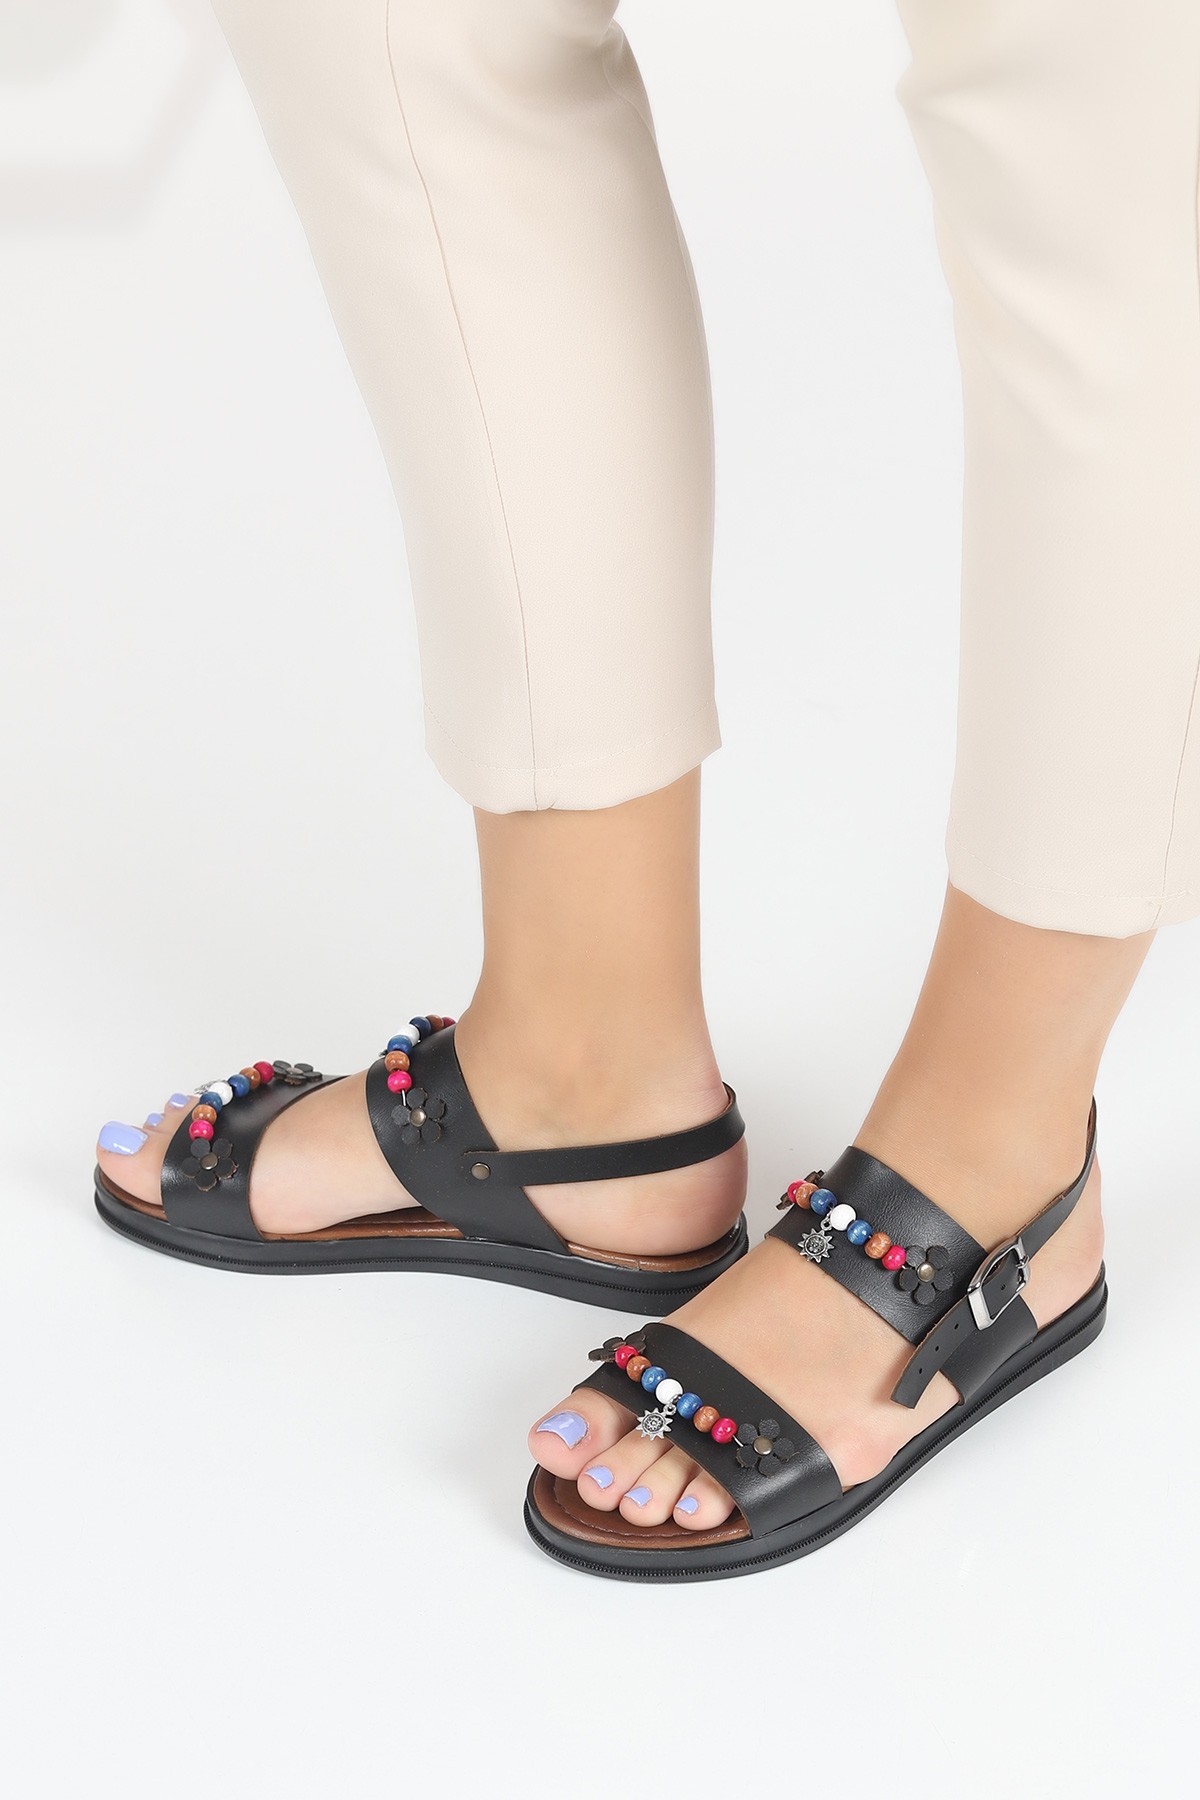 Siyah Boncuk Tasarım Kadın Sandalet 115397